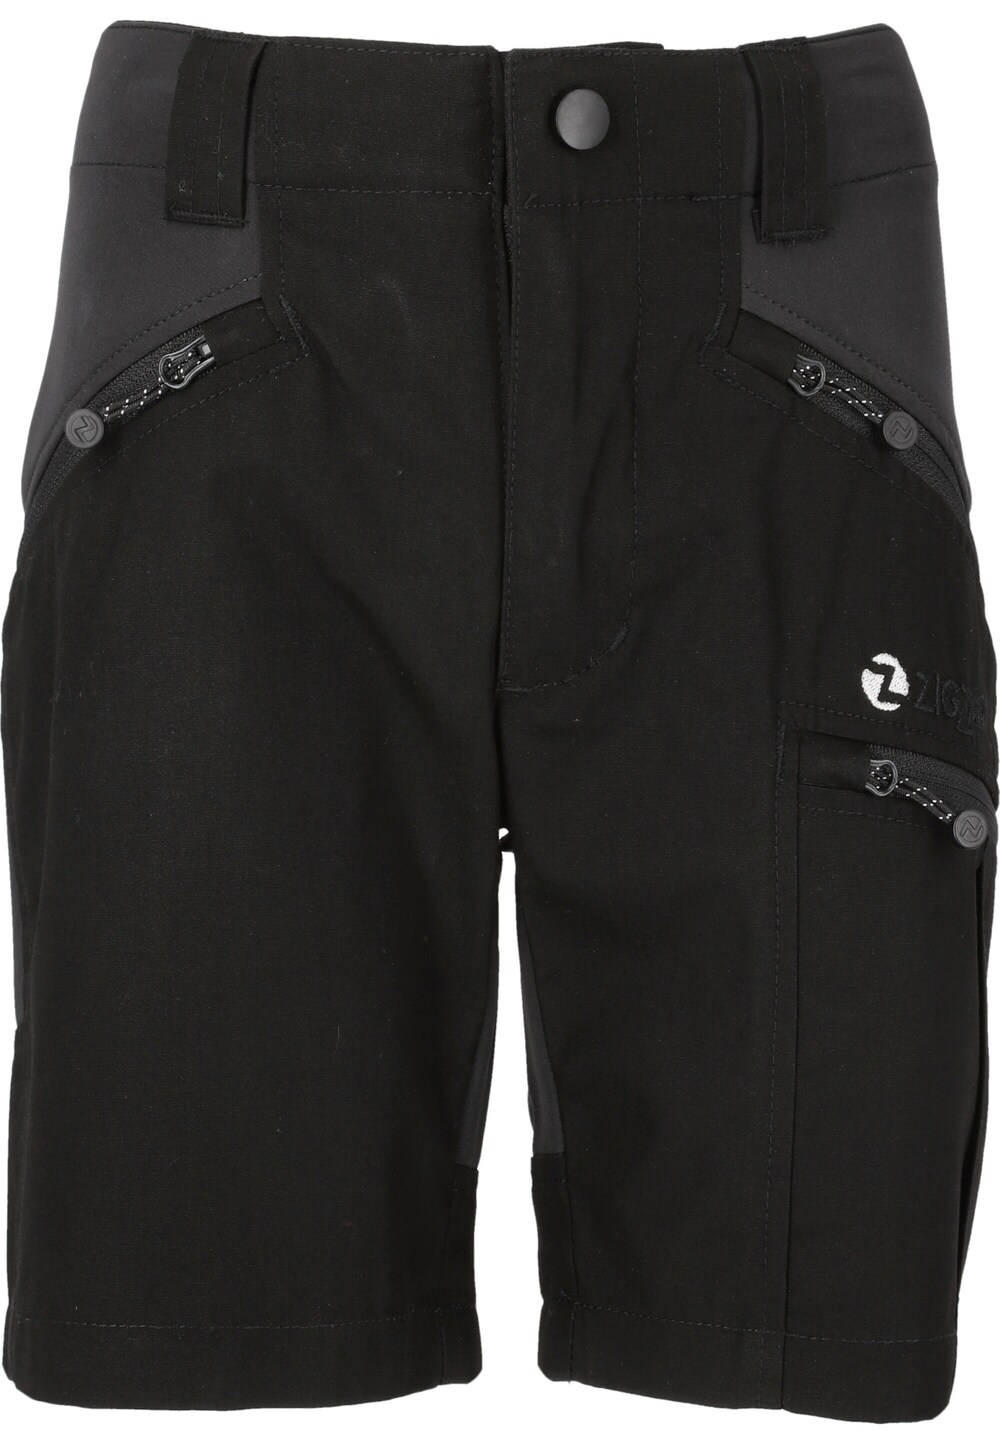 Обычные тренировочные брюки ZigZag Bono, темно-серый